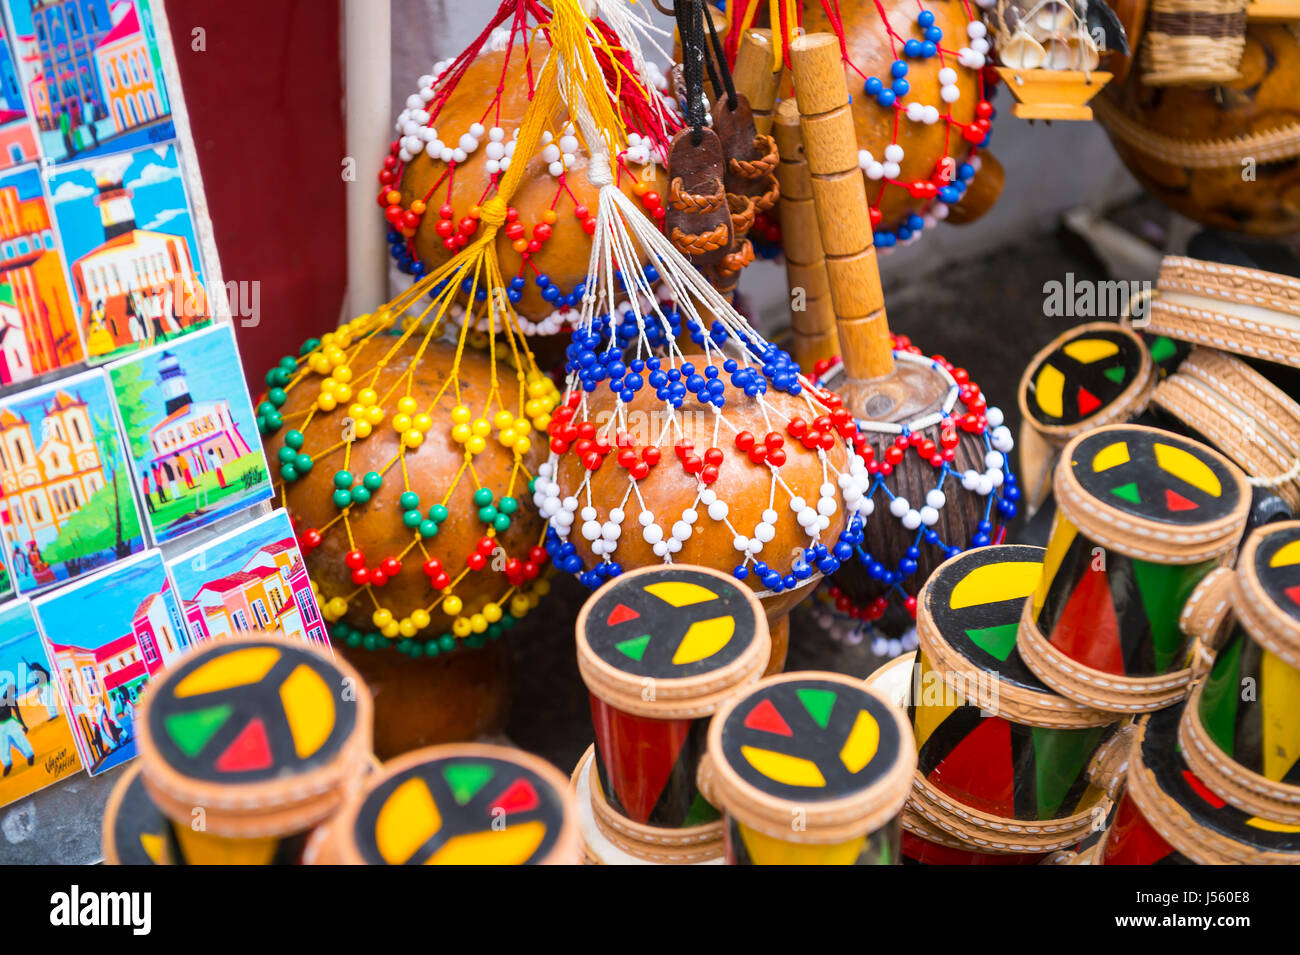 SALVADOR, Brasilien - 9. März 2017: Ein Souvenir shop Verkauf lokales Kunsthandwerk und Afro-brasilianische Musikinstrumente im historischen Pelourinho. Stockfoto